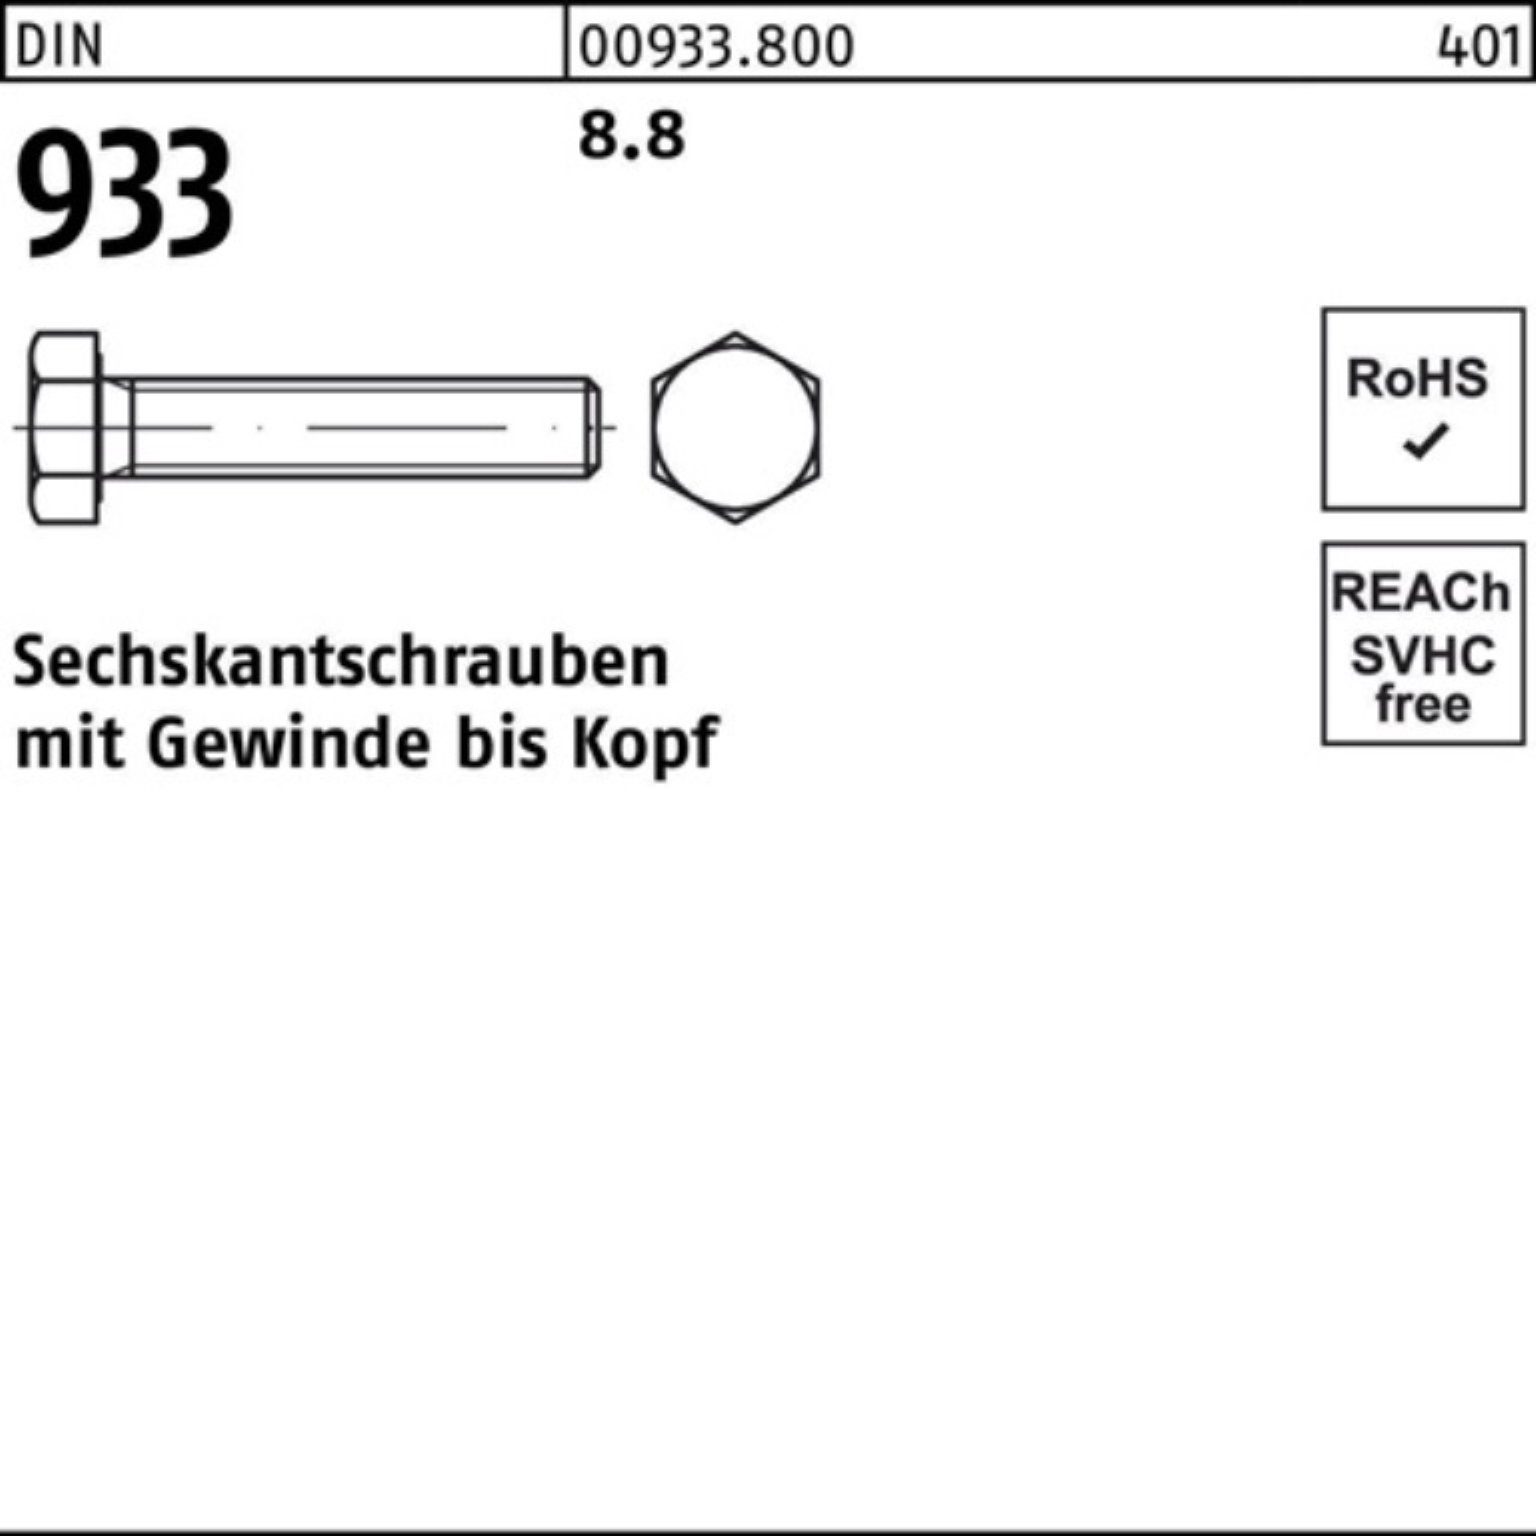 Sechskantschraube DIN Sechskantschraube M10x 933 8.8 Stück 200 DIN Reyher 200er Pack VG 10 933